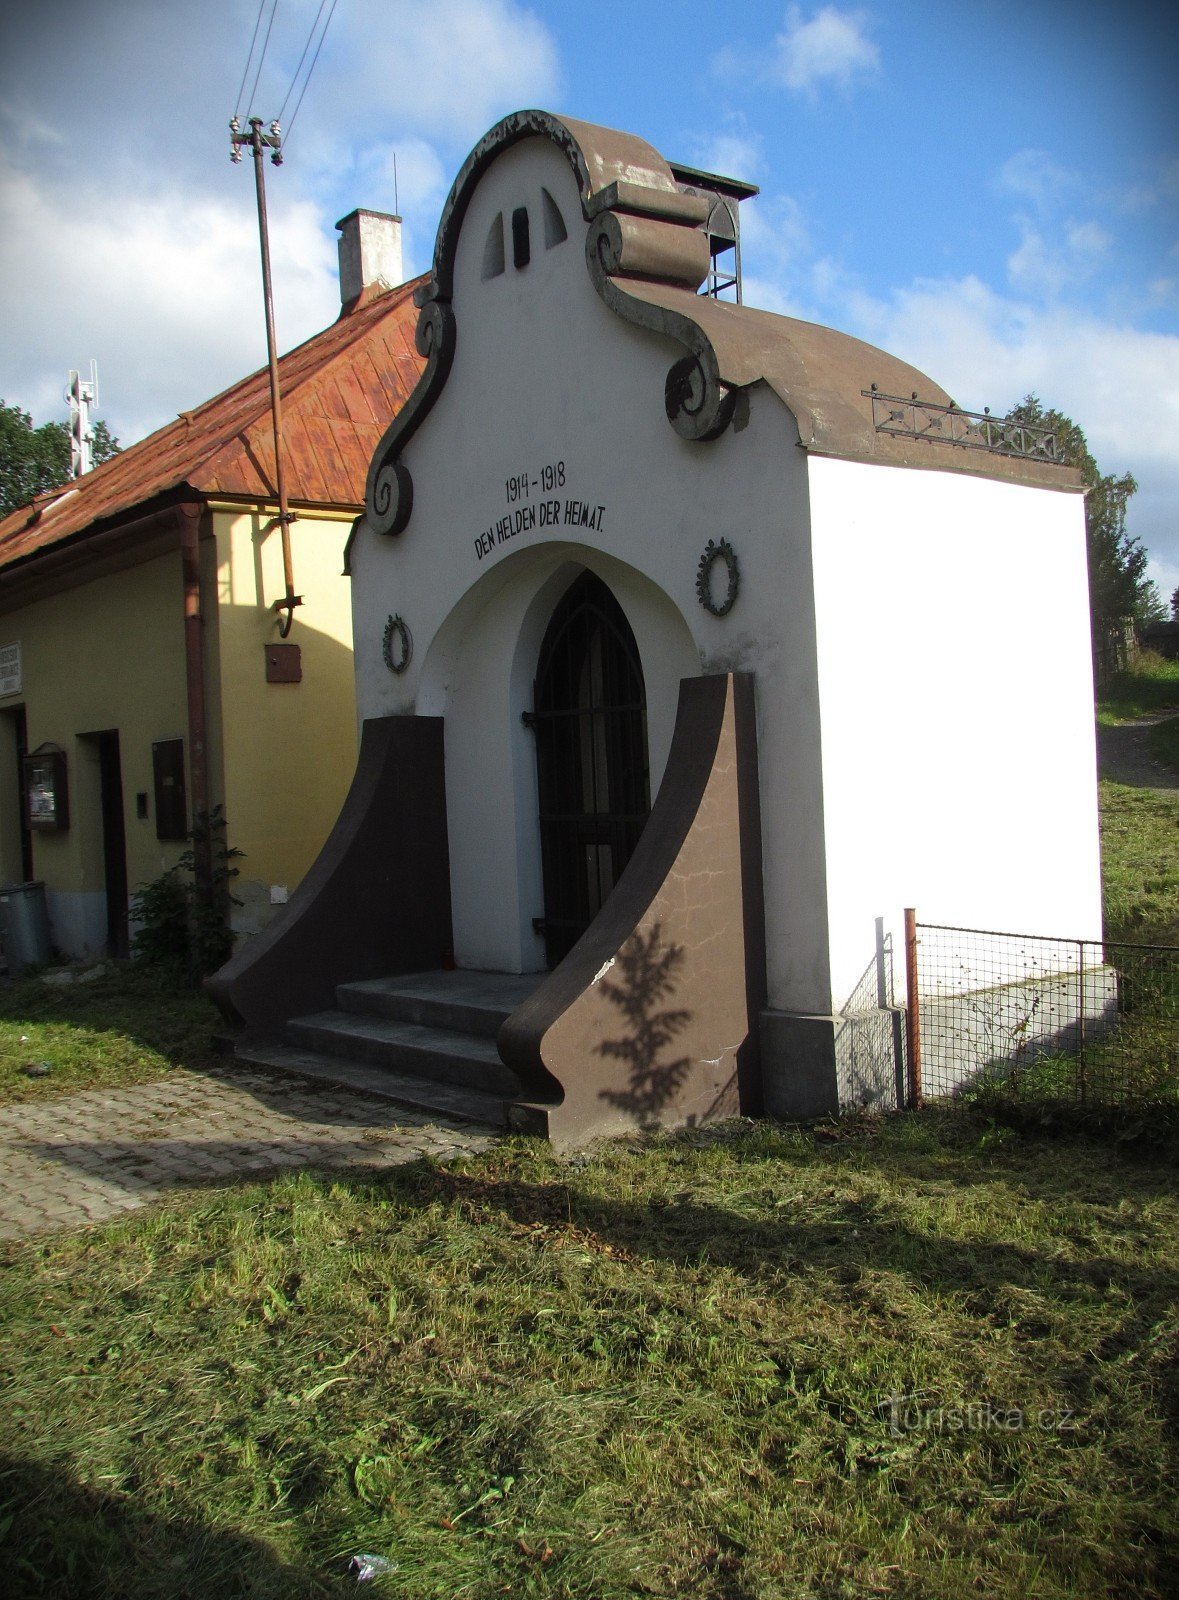 Rýmařov - belfort in Janovice